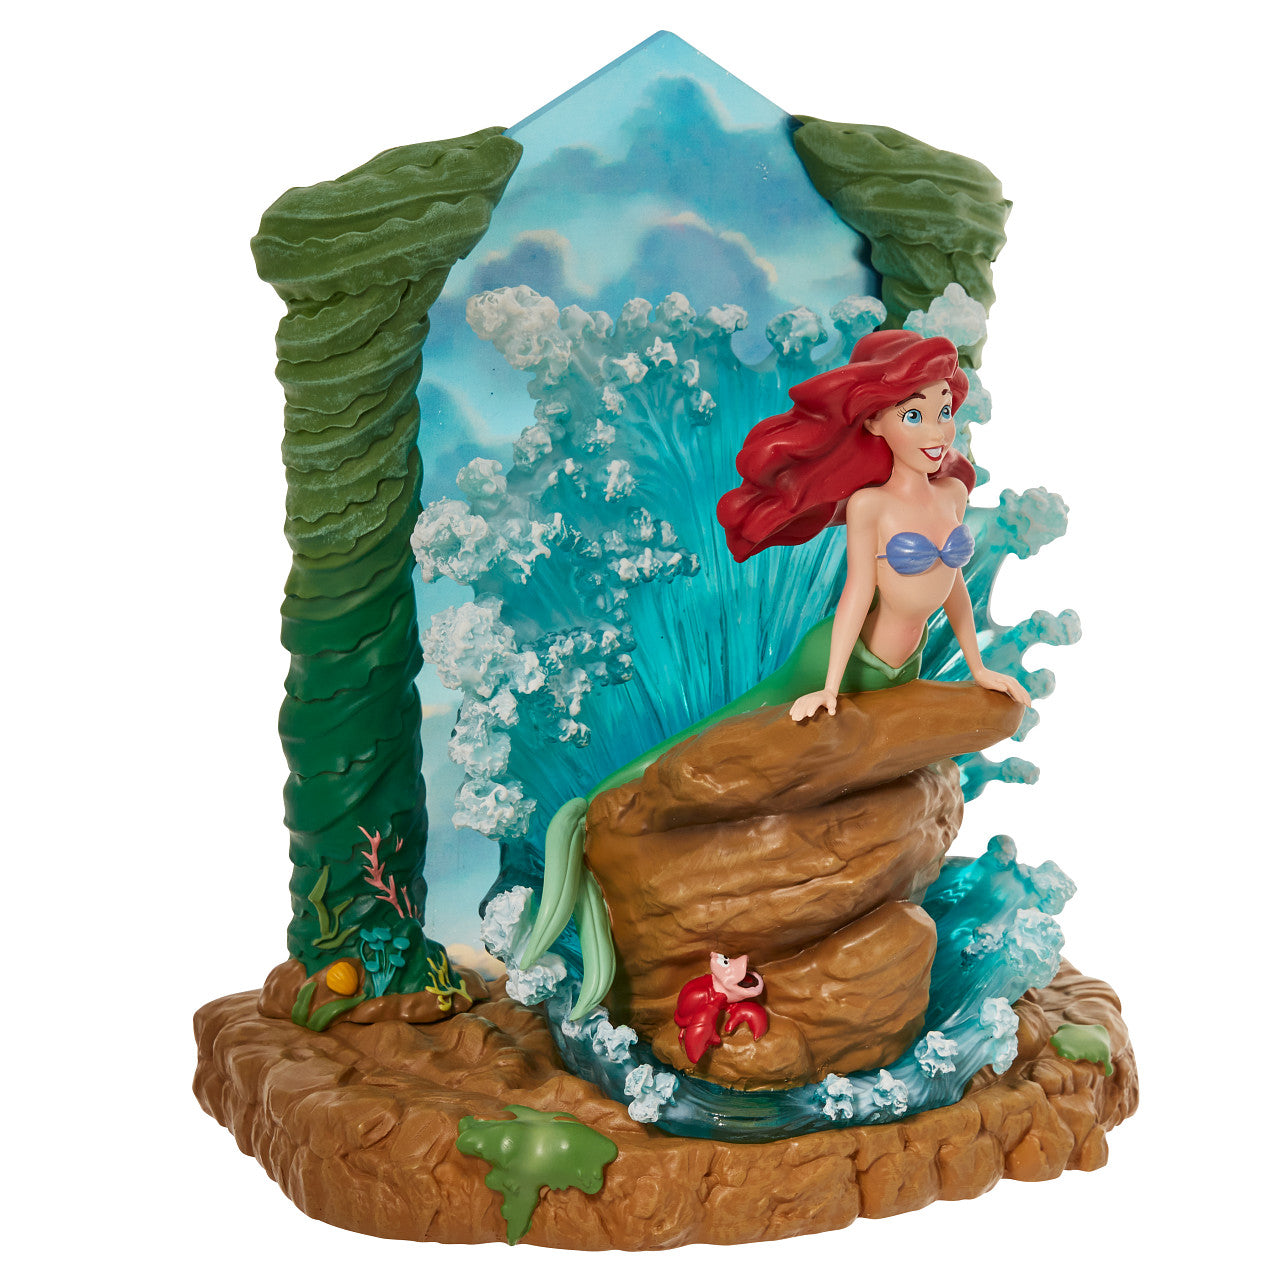 The Little Mermaid Light-Up Figurine